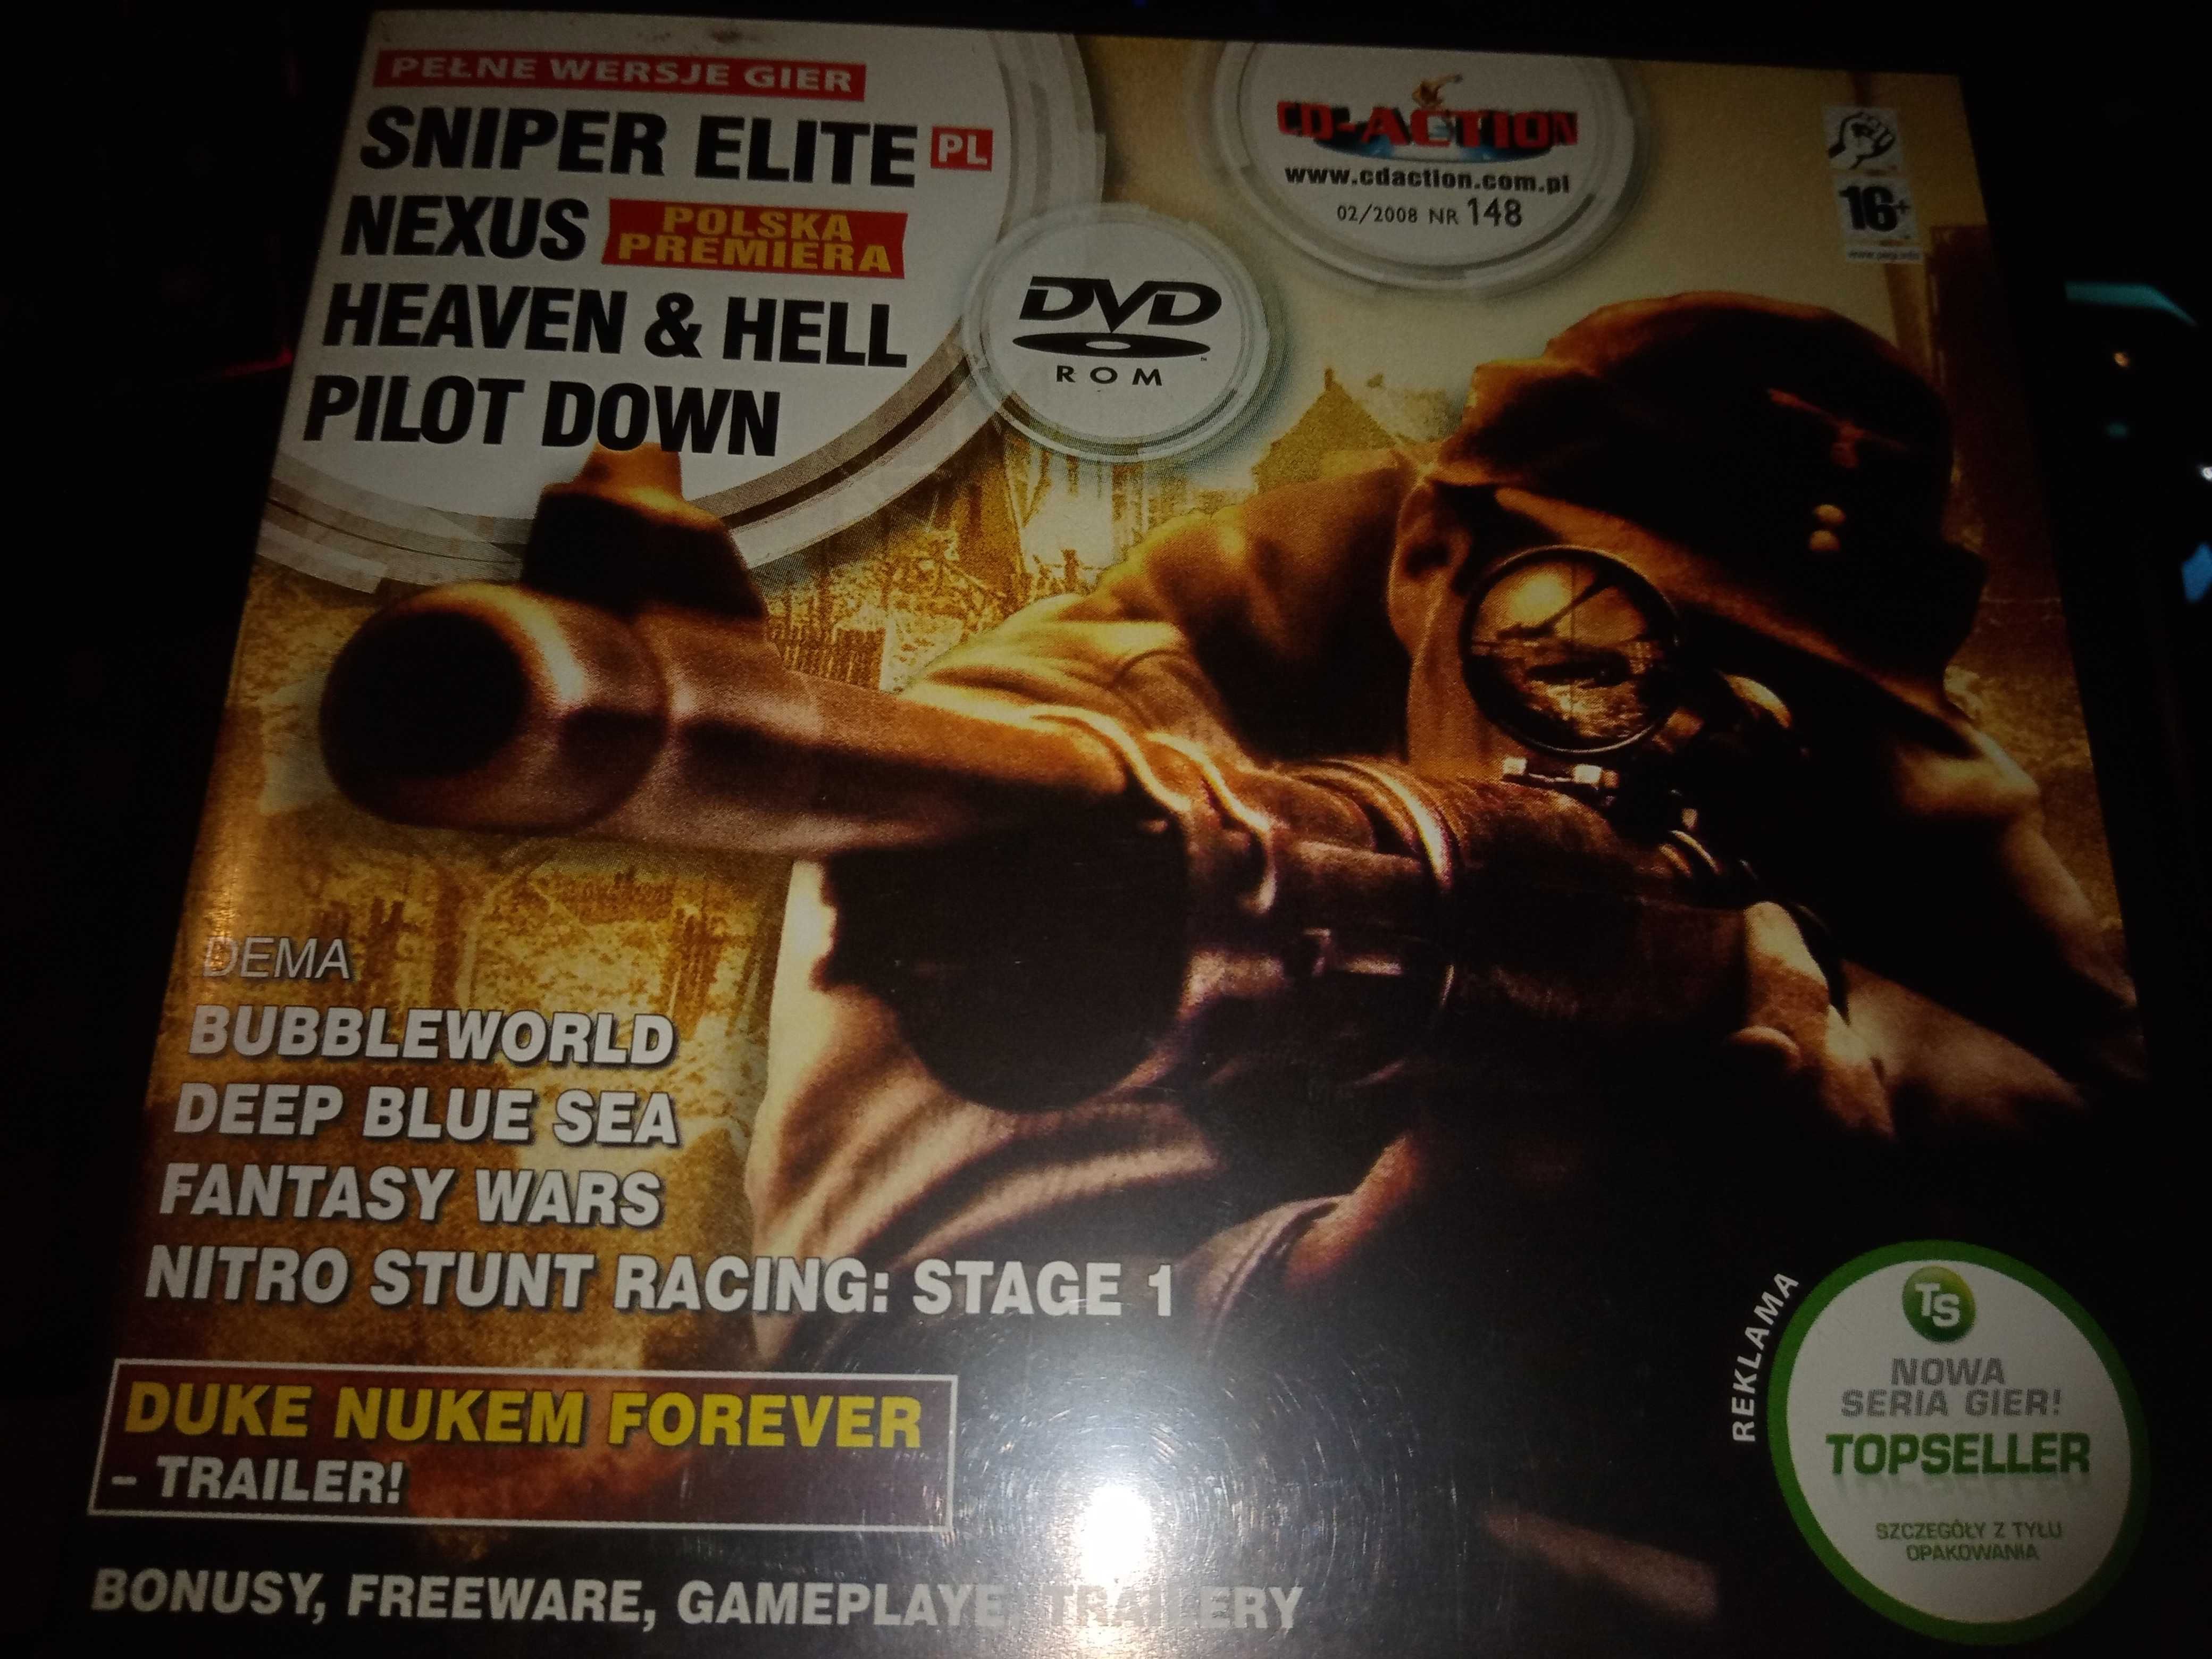 CD-ACTION 2/2008 #148 - Heaven & Hell, Nexus, Sniper Elite, Pilot Down